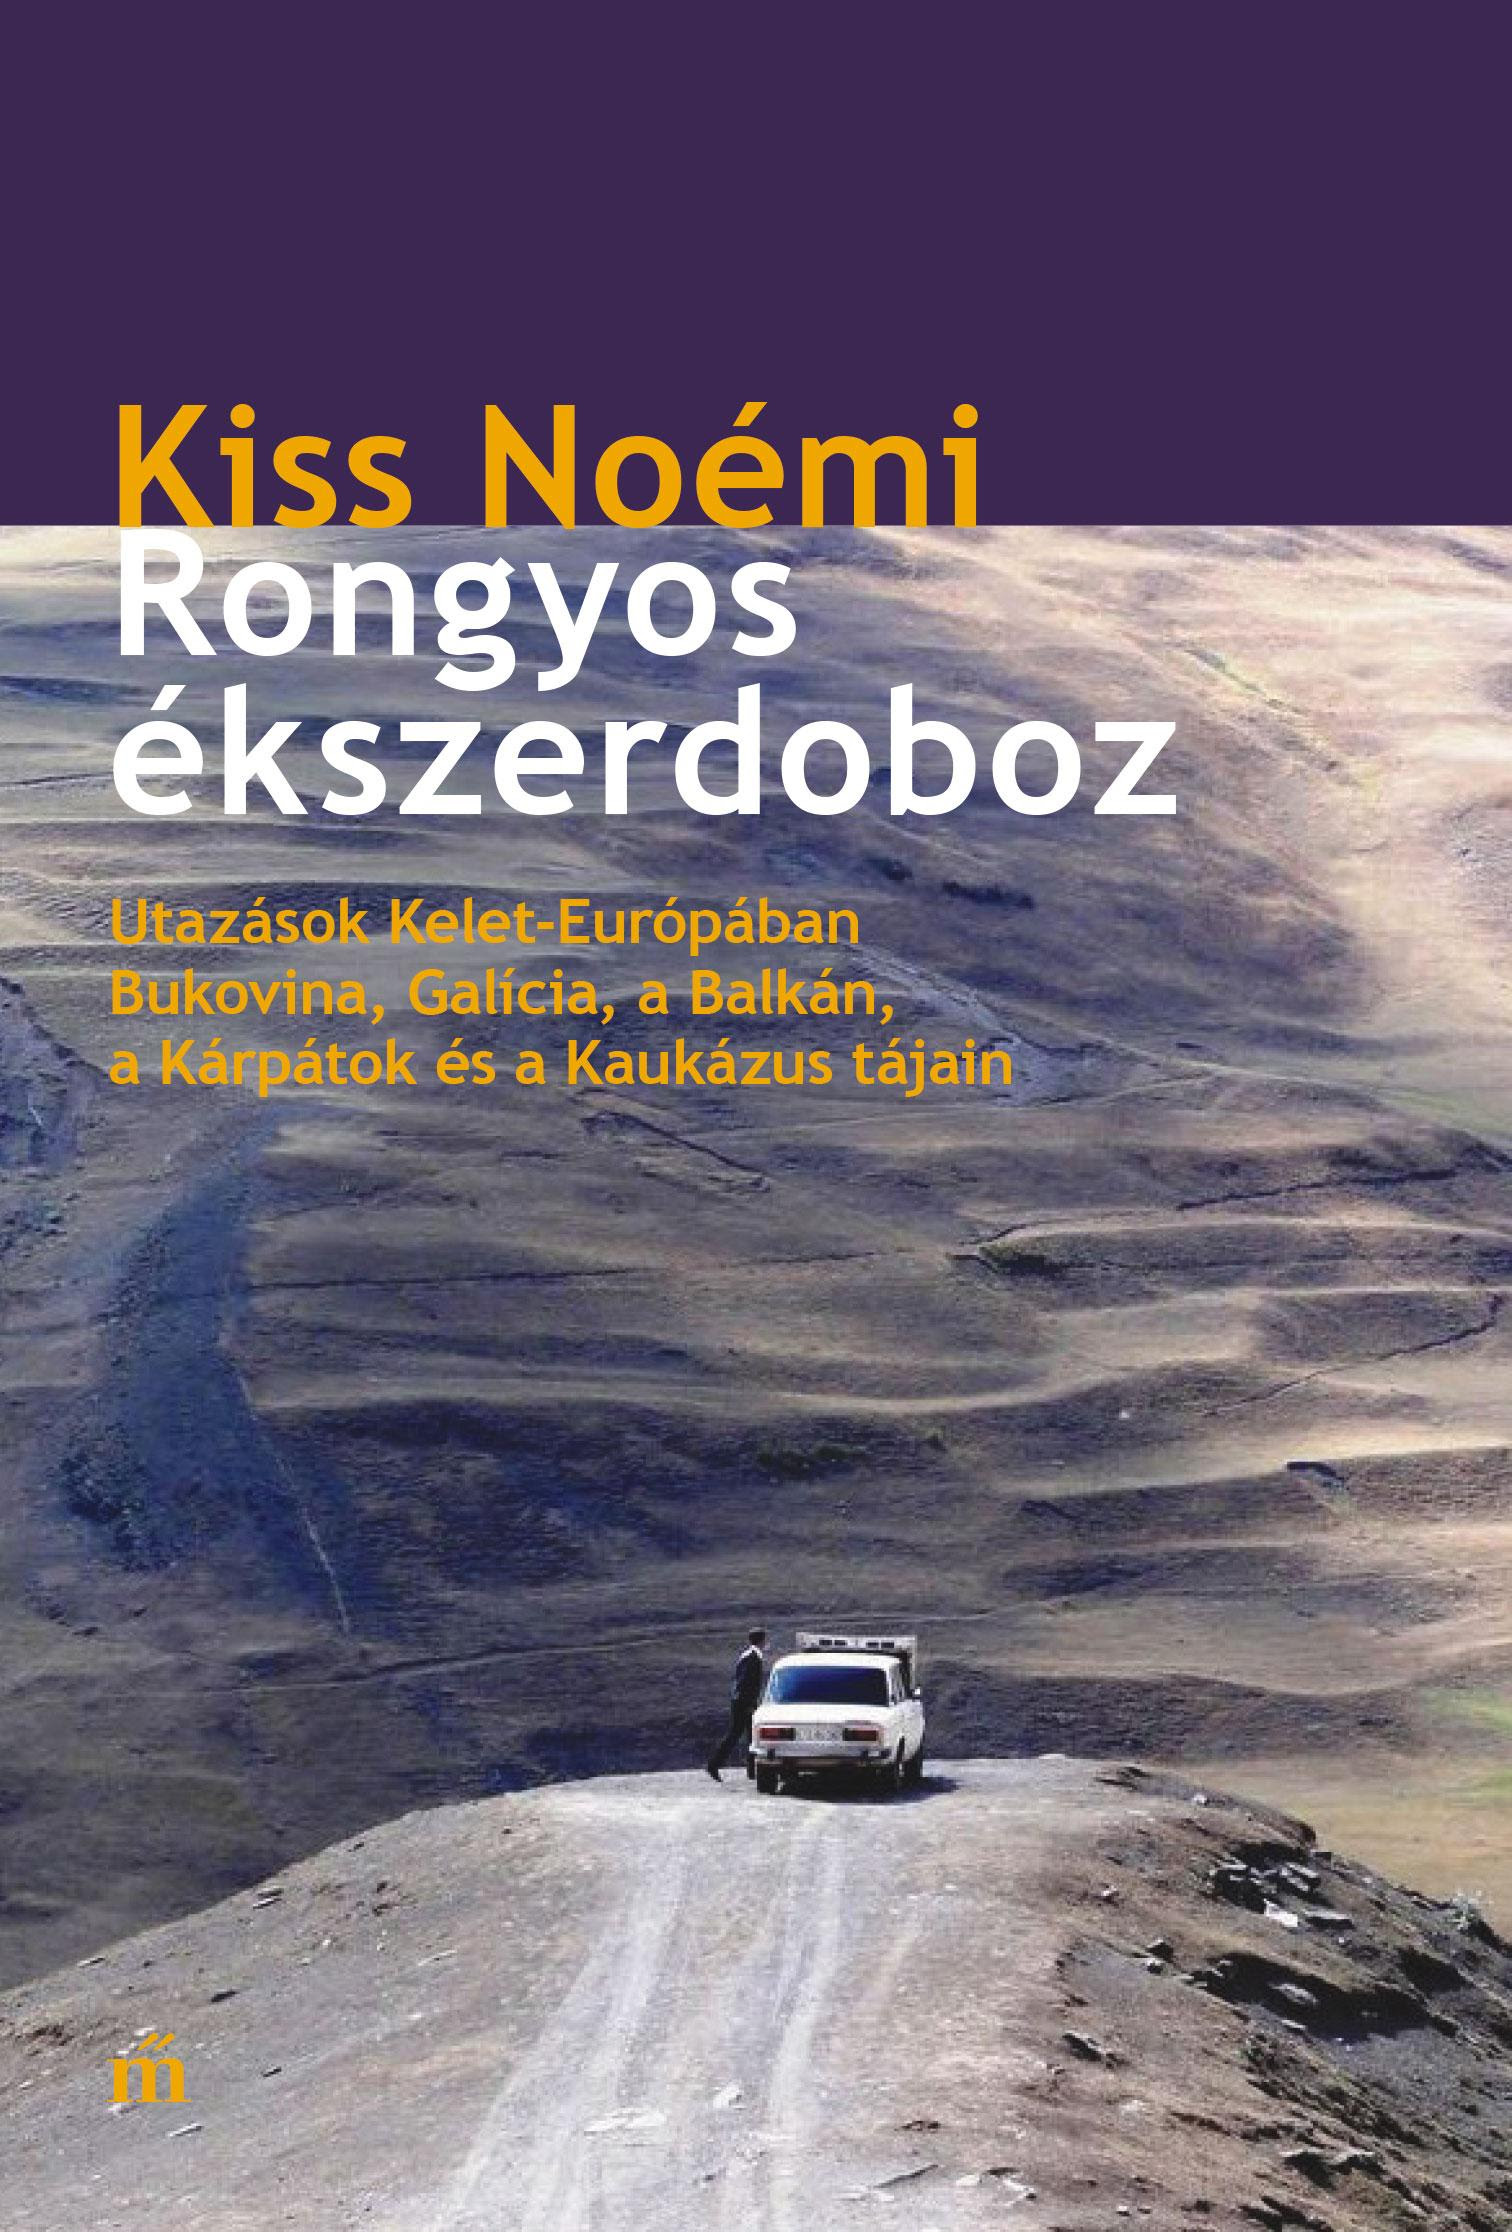 Kiss Noémi: Rongyos ékszerdoboz